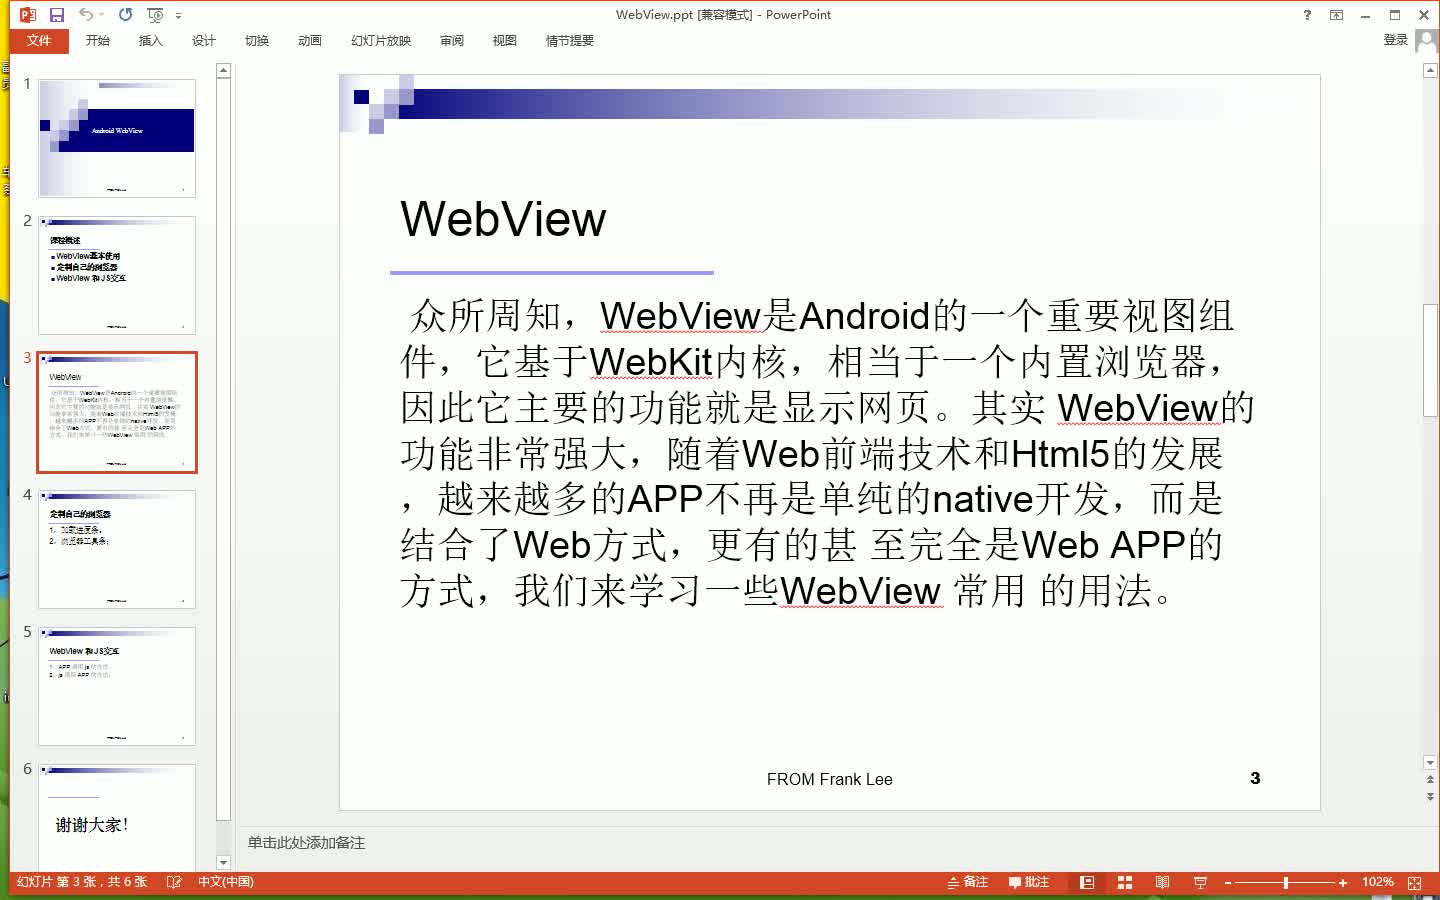 基于WebView 实现自己的Web APP